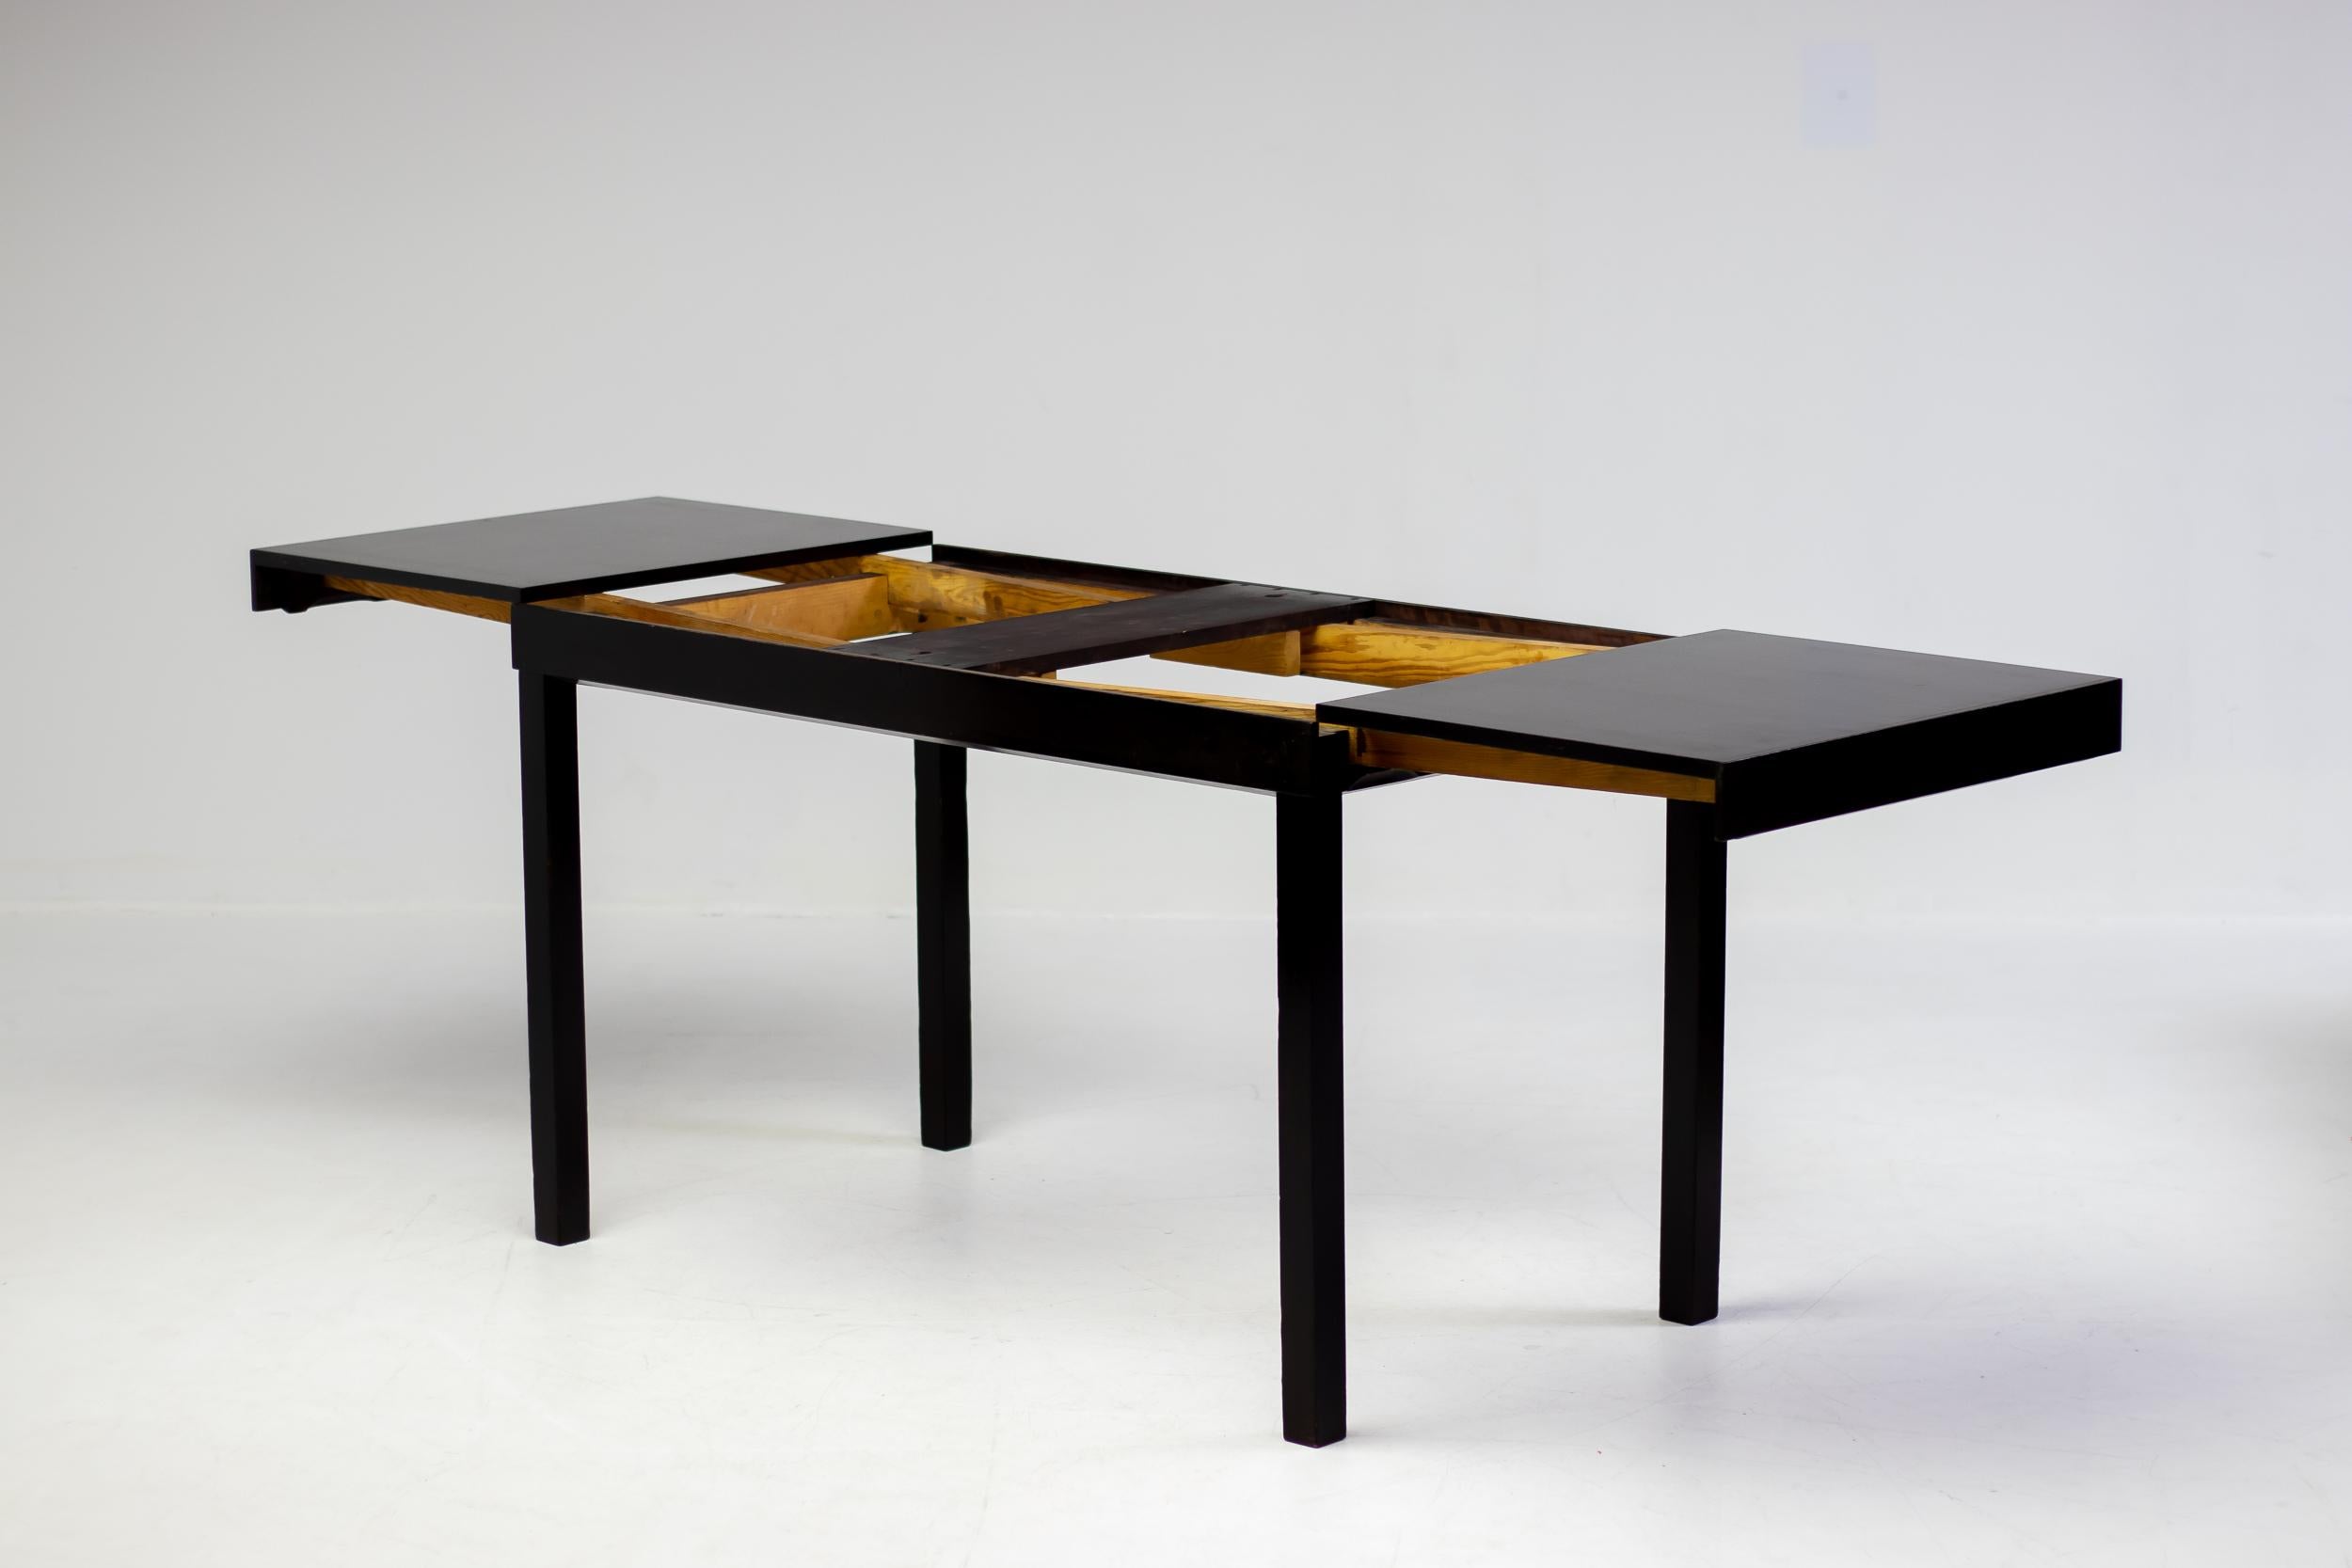 Cette magnifique table à manger ou bureau extensible The Modern Scandinavian Modern a été conçue par Axel Einar Hjorth pour NK dans les années 1930.  La base et les rallonges sont laquées dans une magnifique couleur chocolat brun très foncé, le